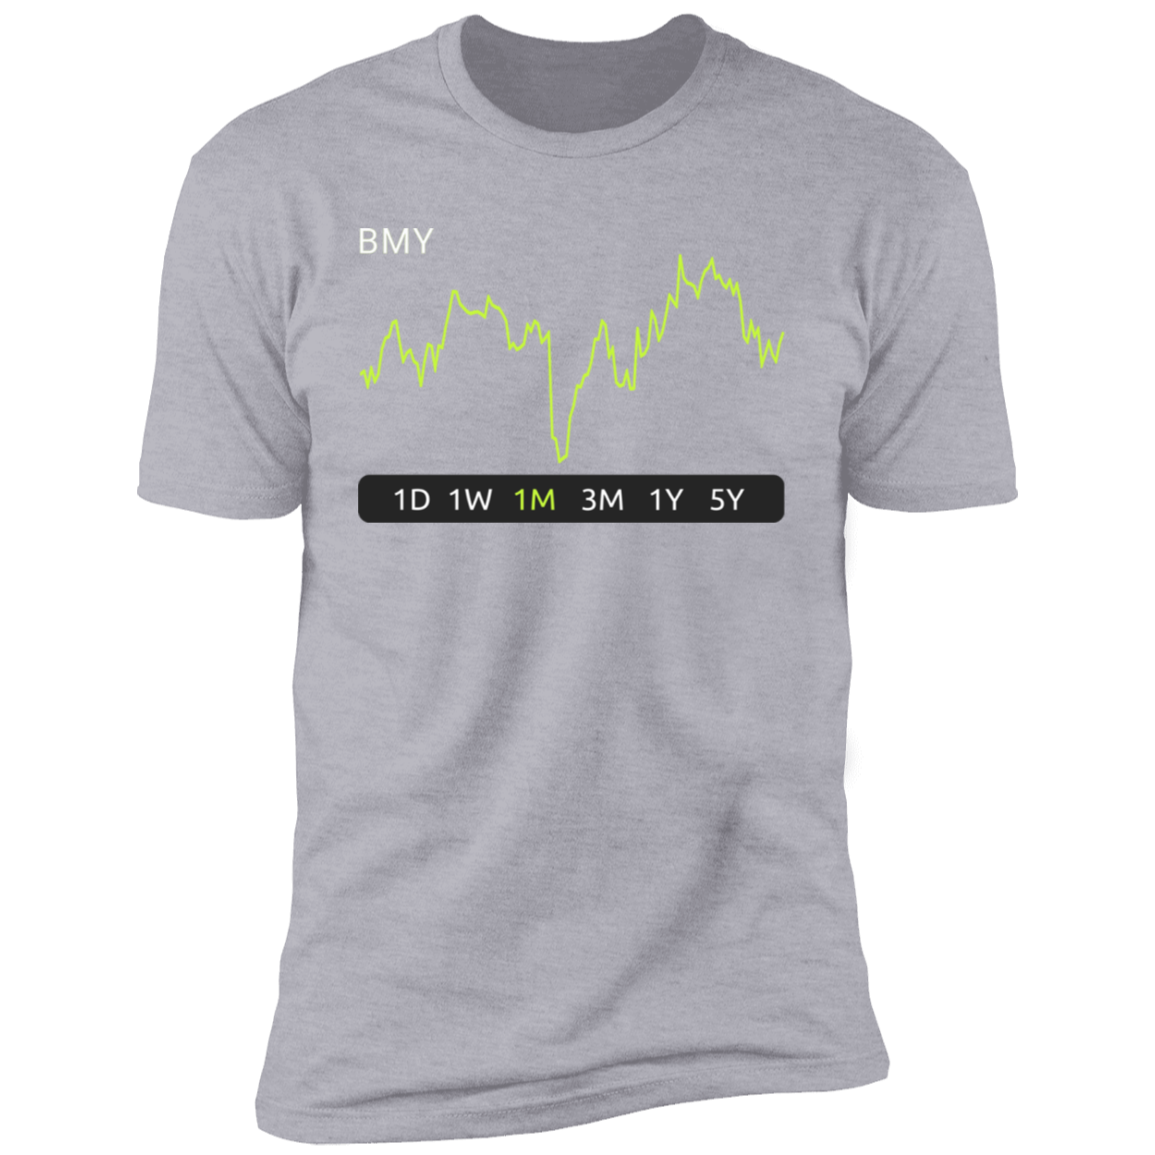 BMY Stock 1m Premium T-Shirt